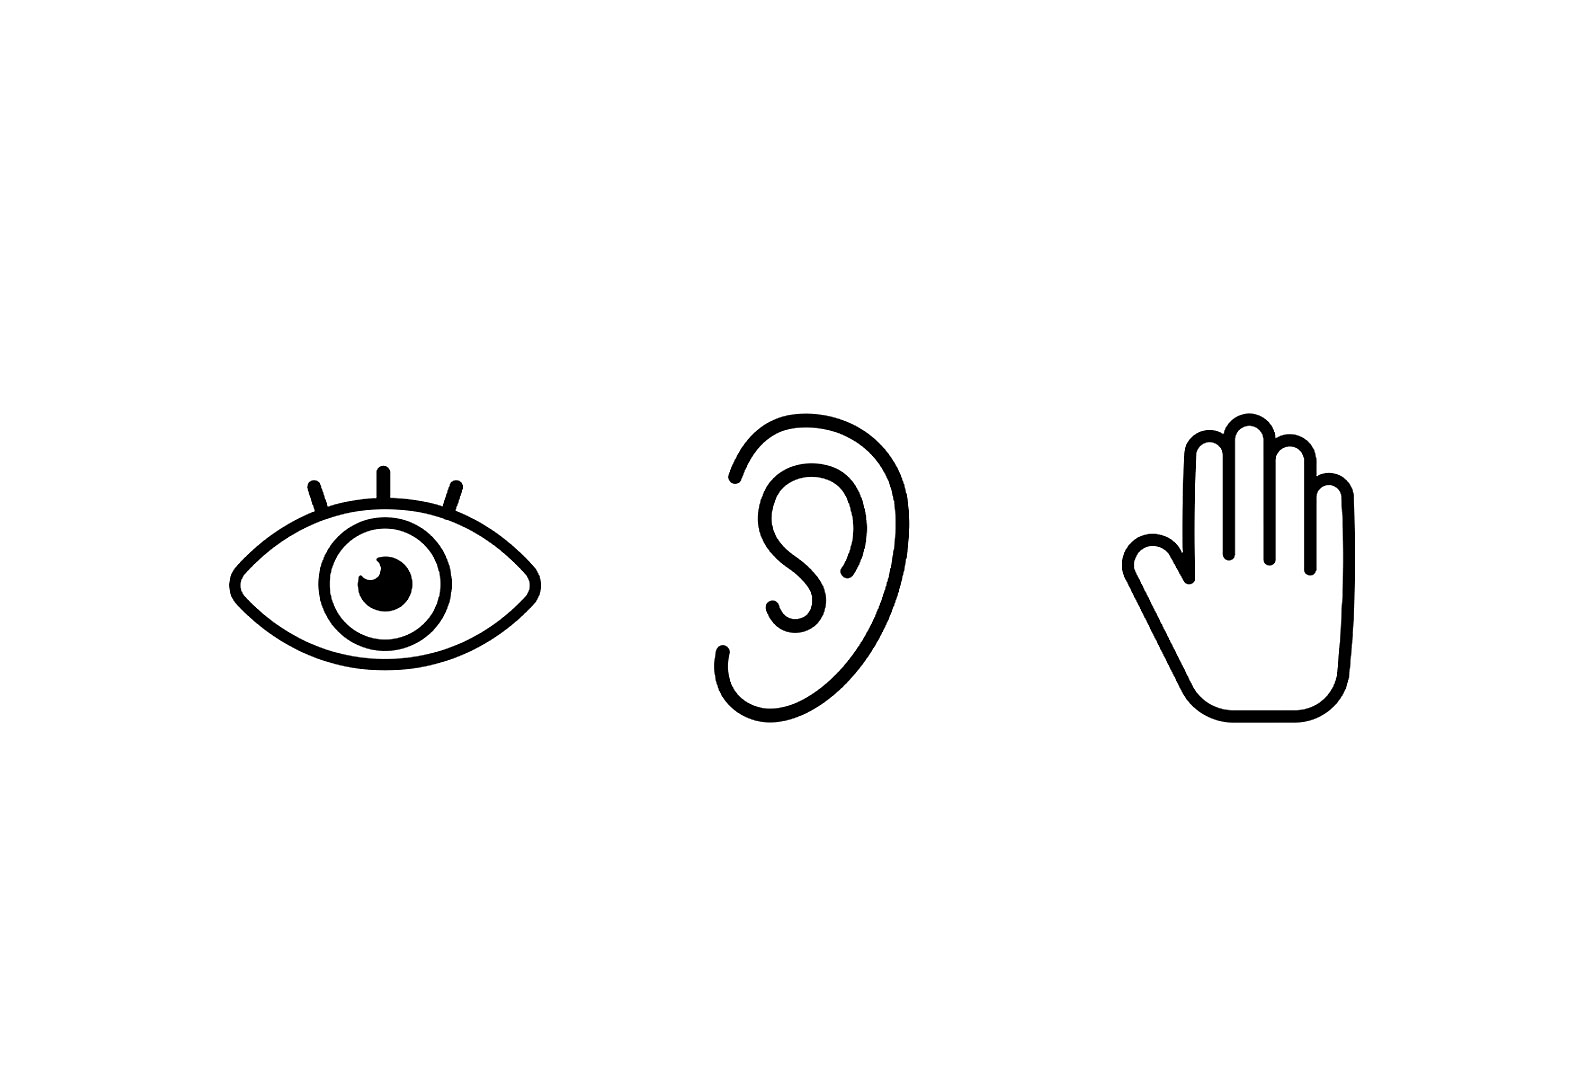 Imagens de ícones simples de um olho, um ouvido e uma mão